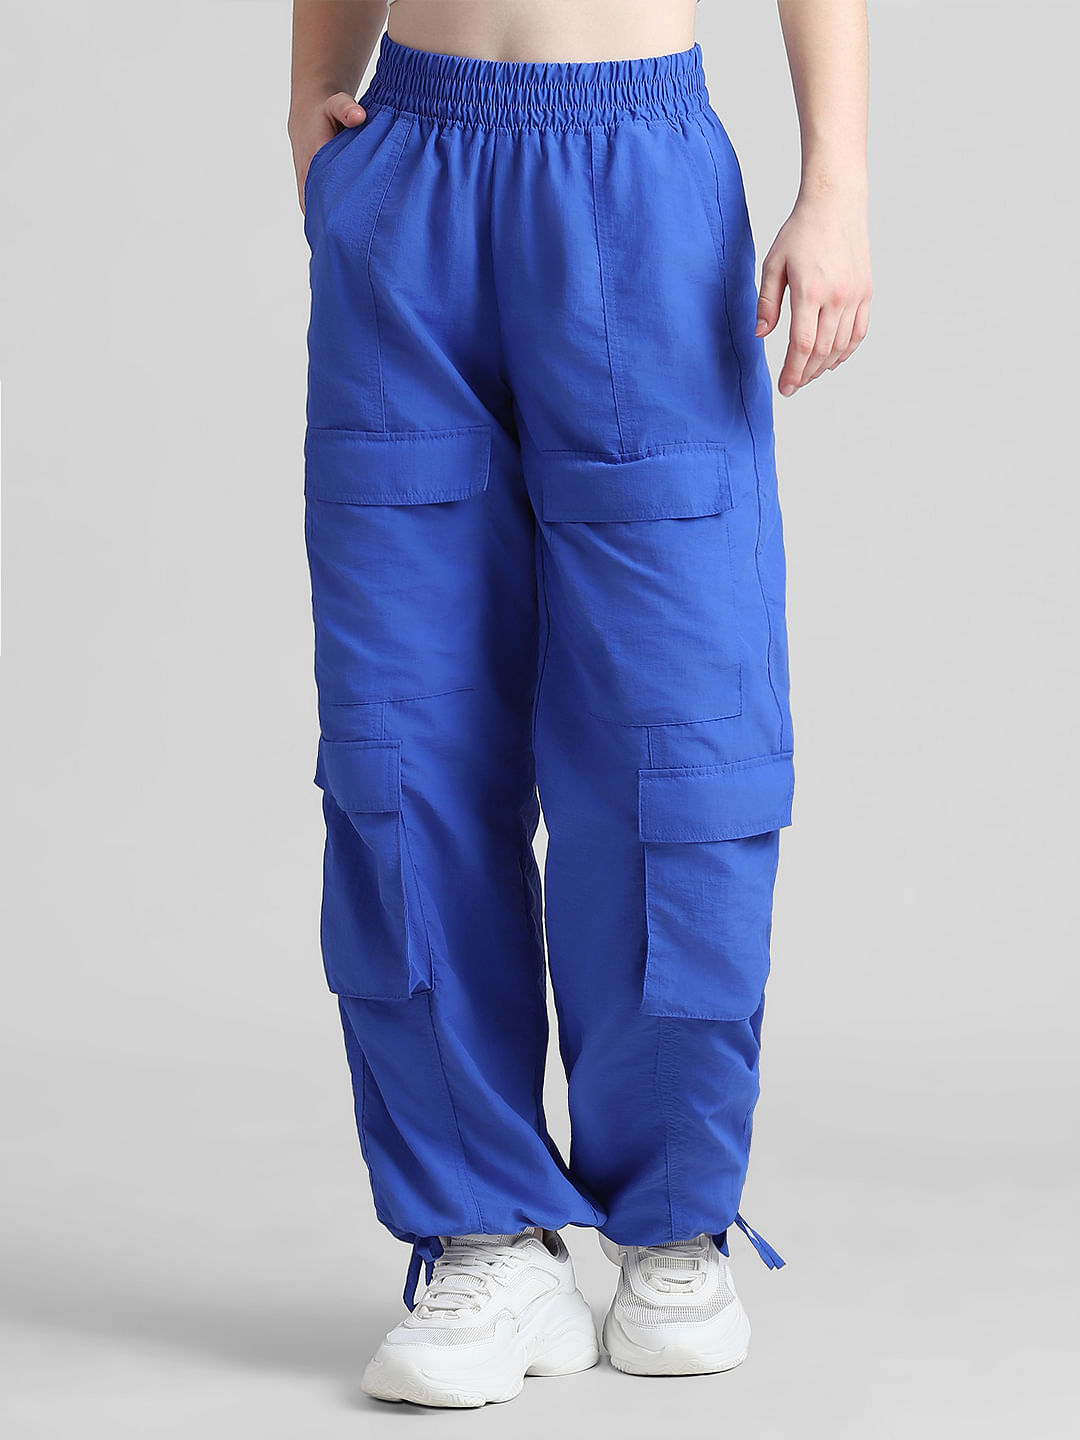 Megan Cargo Pants (Royal Blue) - Laura's Boutique, Inc